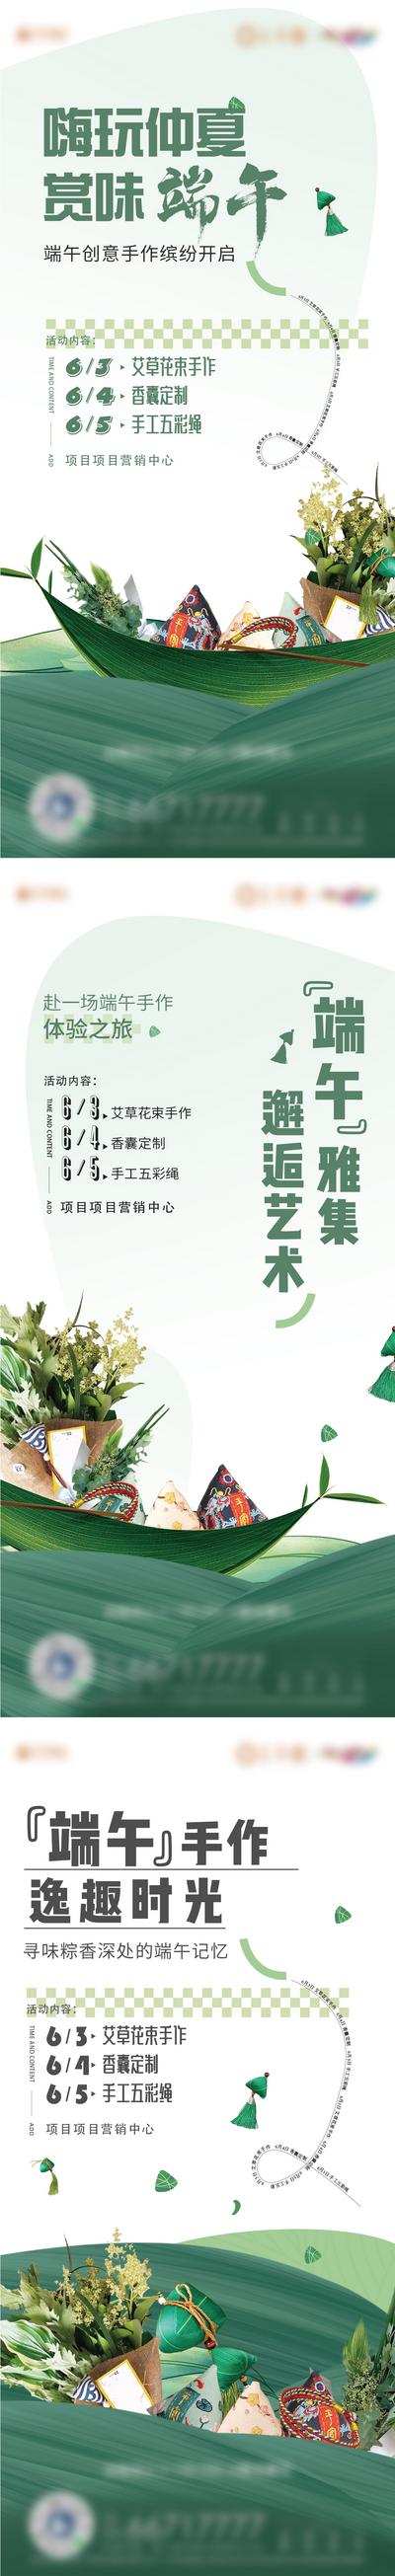 南门网 海报 地产 中国传统节日 端午节 系列 暖场 活动 艾草 手作 花束 香囊 送礼